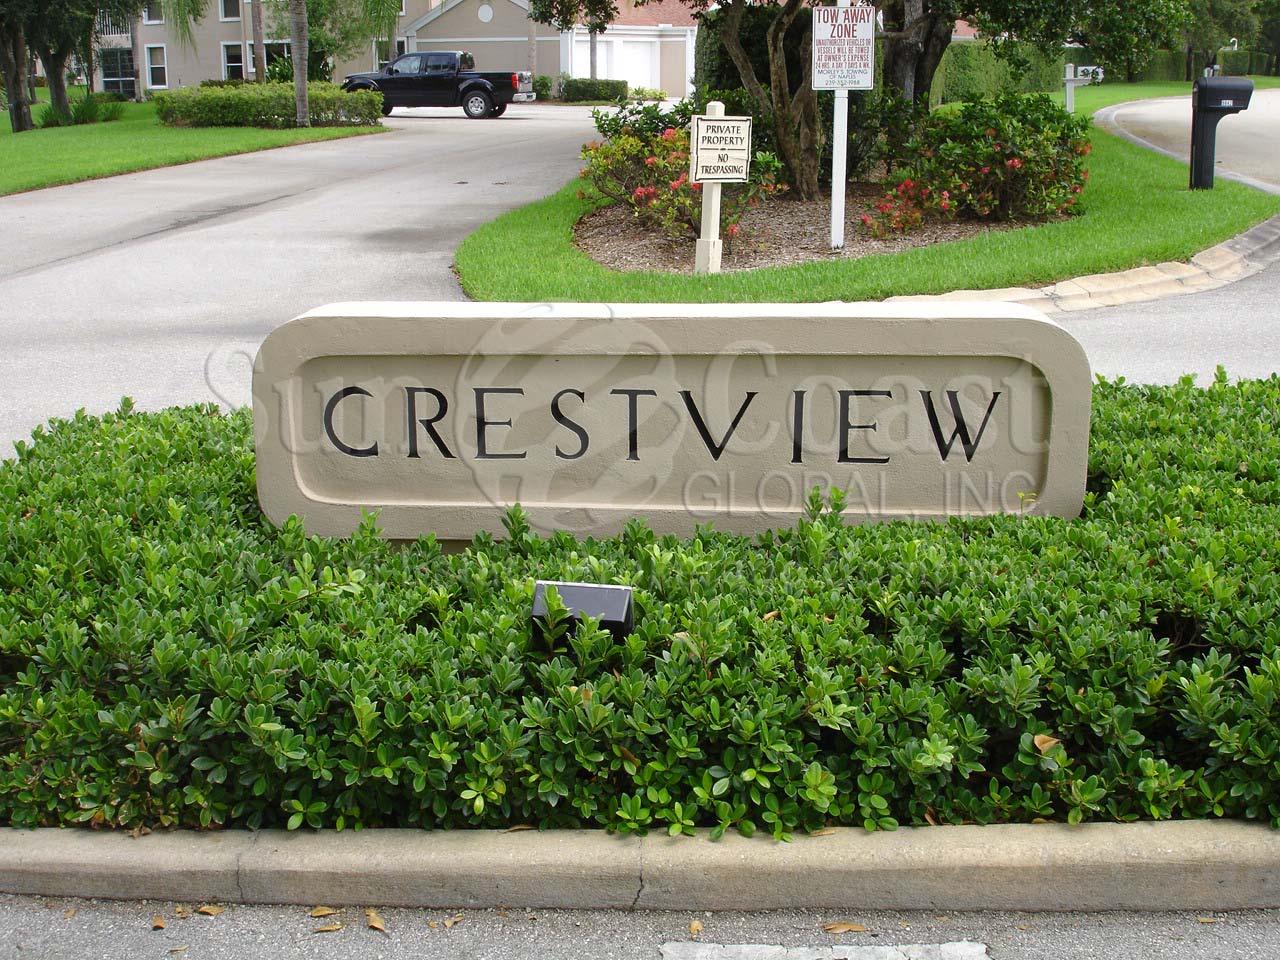 Crestview signage